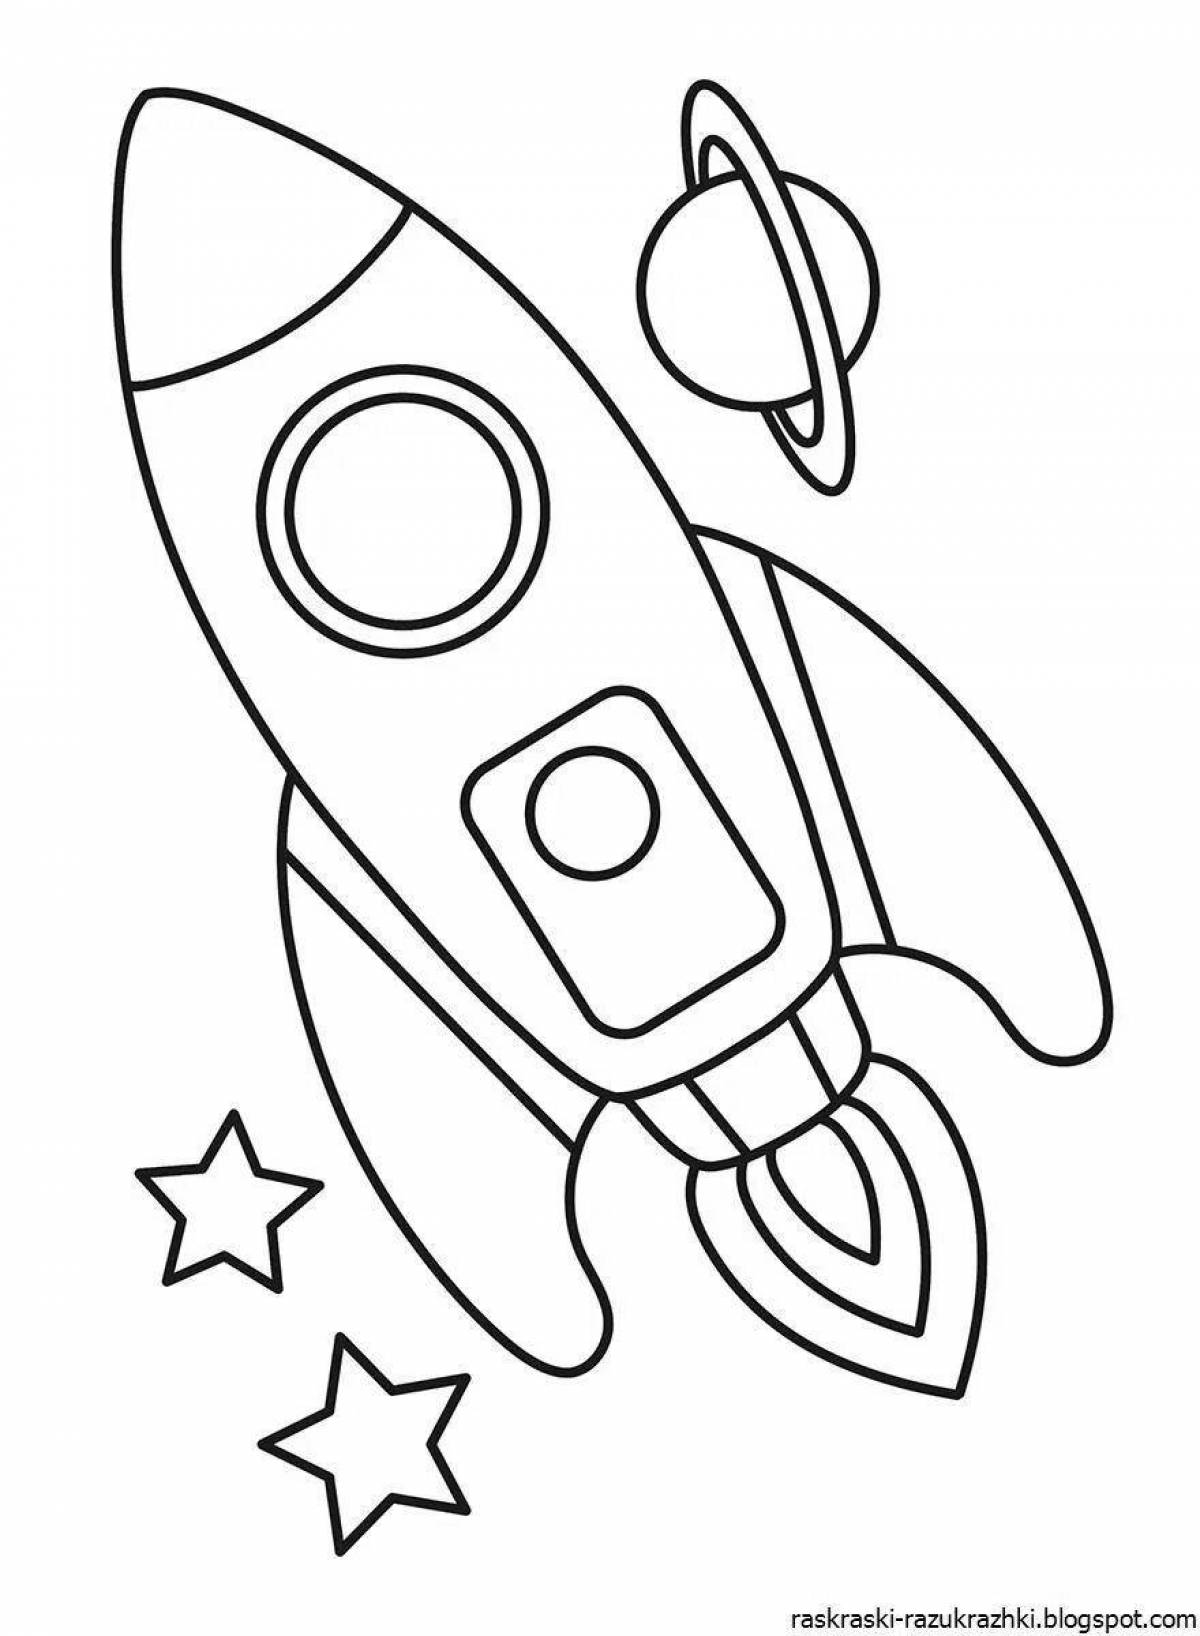 Раскраски космос для детей 3 4 лет. Ракета раскраска. Космос раскраска для детей. Ракета раскраска для детей. Раскраска ракета для детей 3-4 лет.